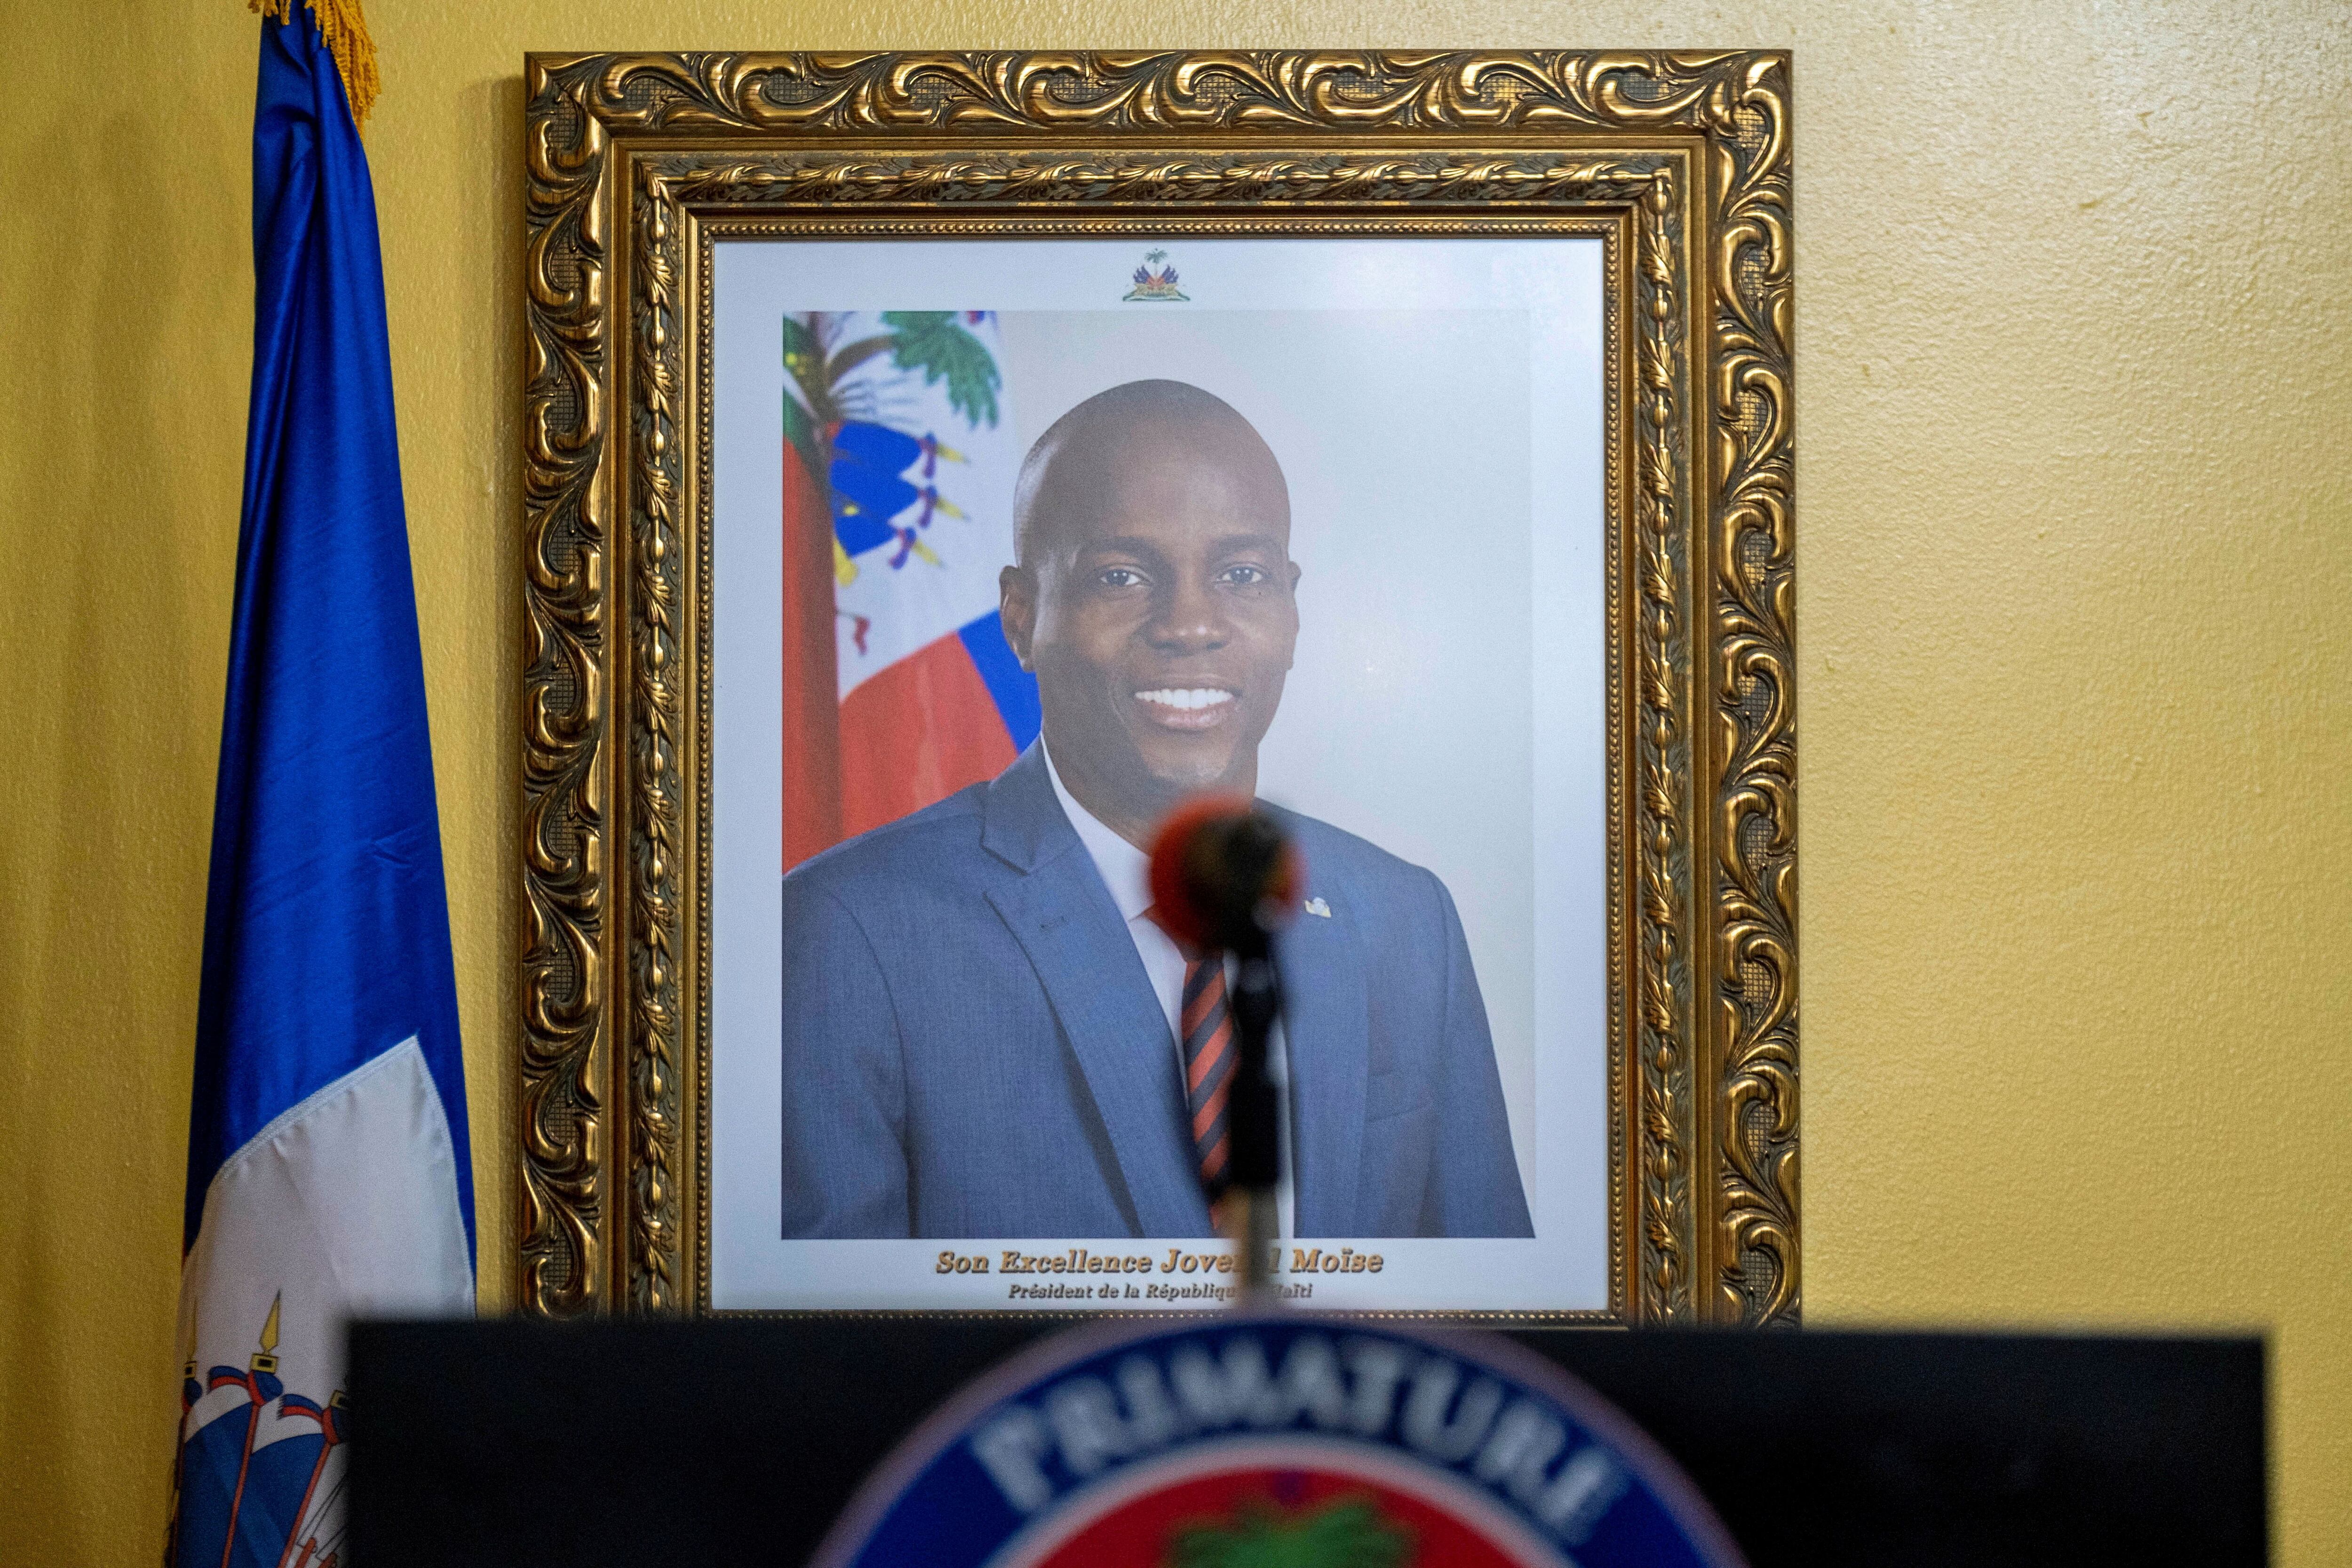 FOTO DE ARCHIVO: Una foto del difunto presidente haitiano Jovenel Moise cuelga en una pared antes de una conferencia de prensa en su casa, casi una semana después de su asesinato, en Puerto Príncipe, Haití, el 13 de julio de 2021. REUTERS/Ricardo Arduengo/Foto de archivo